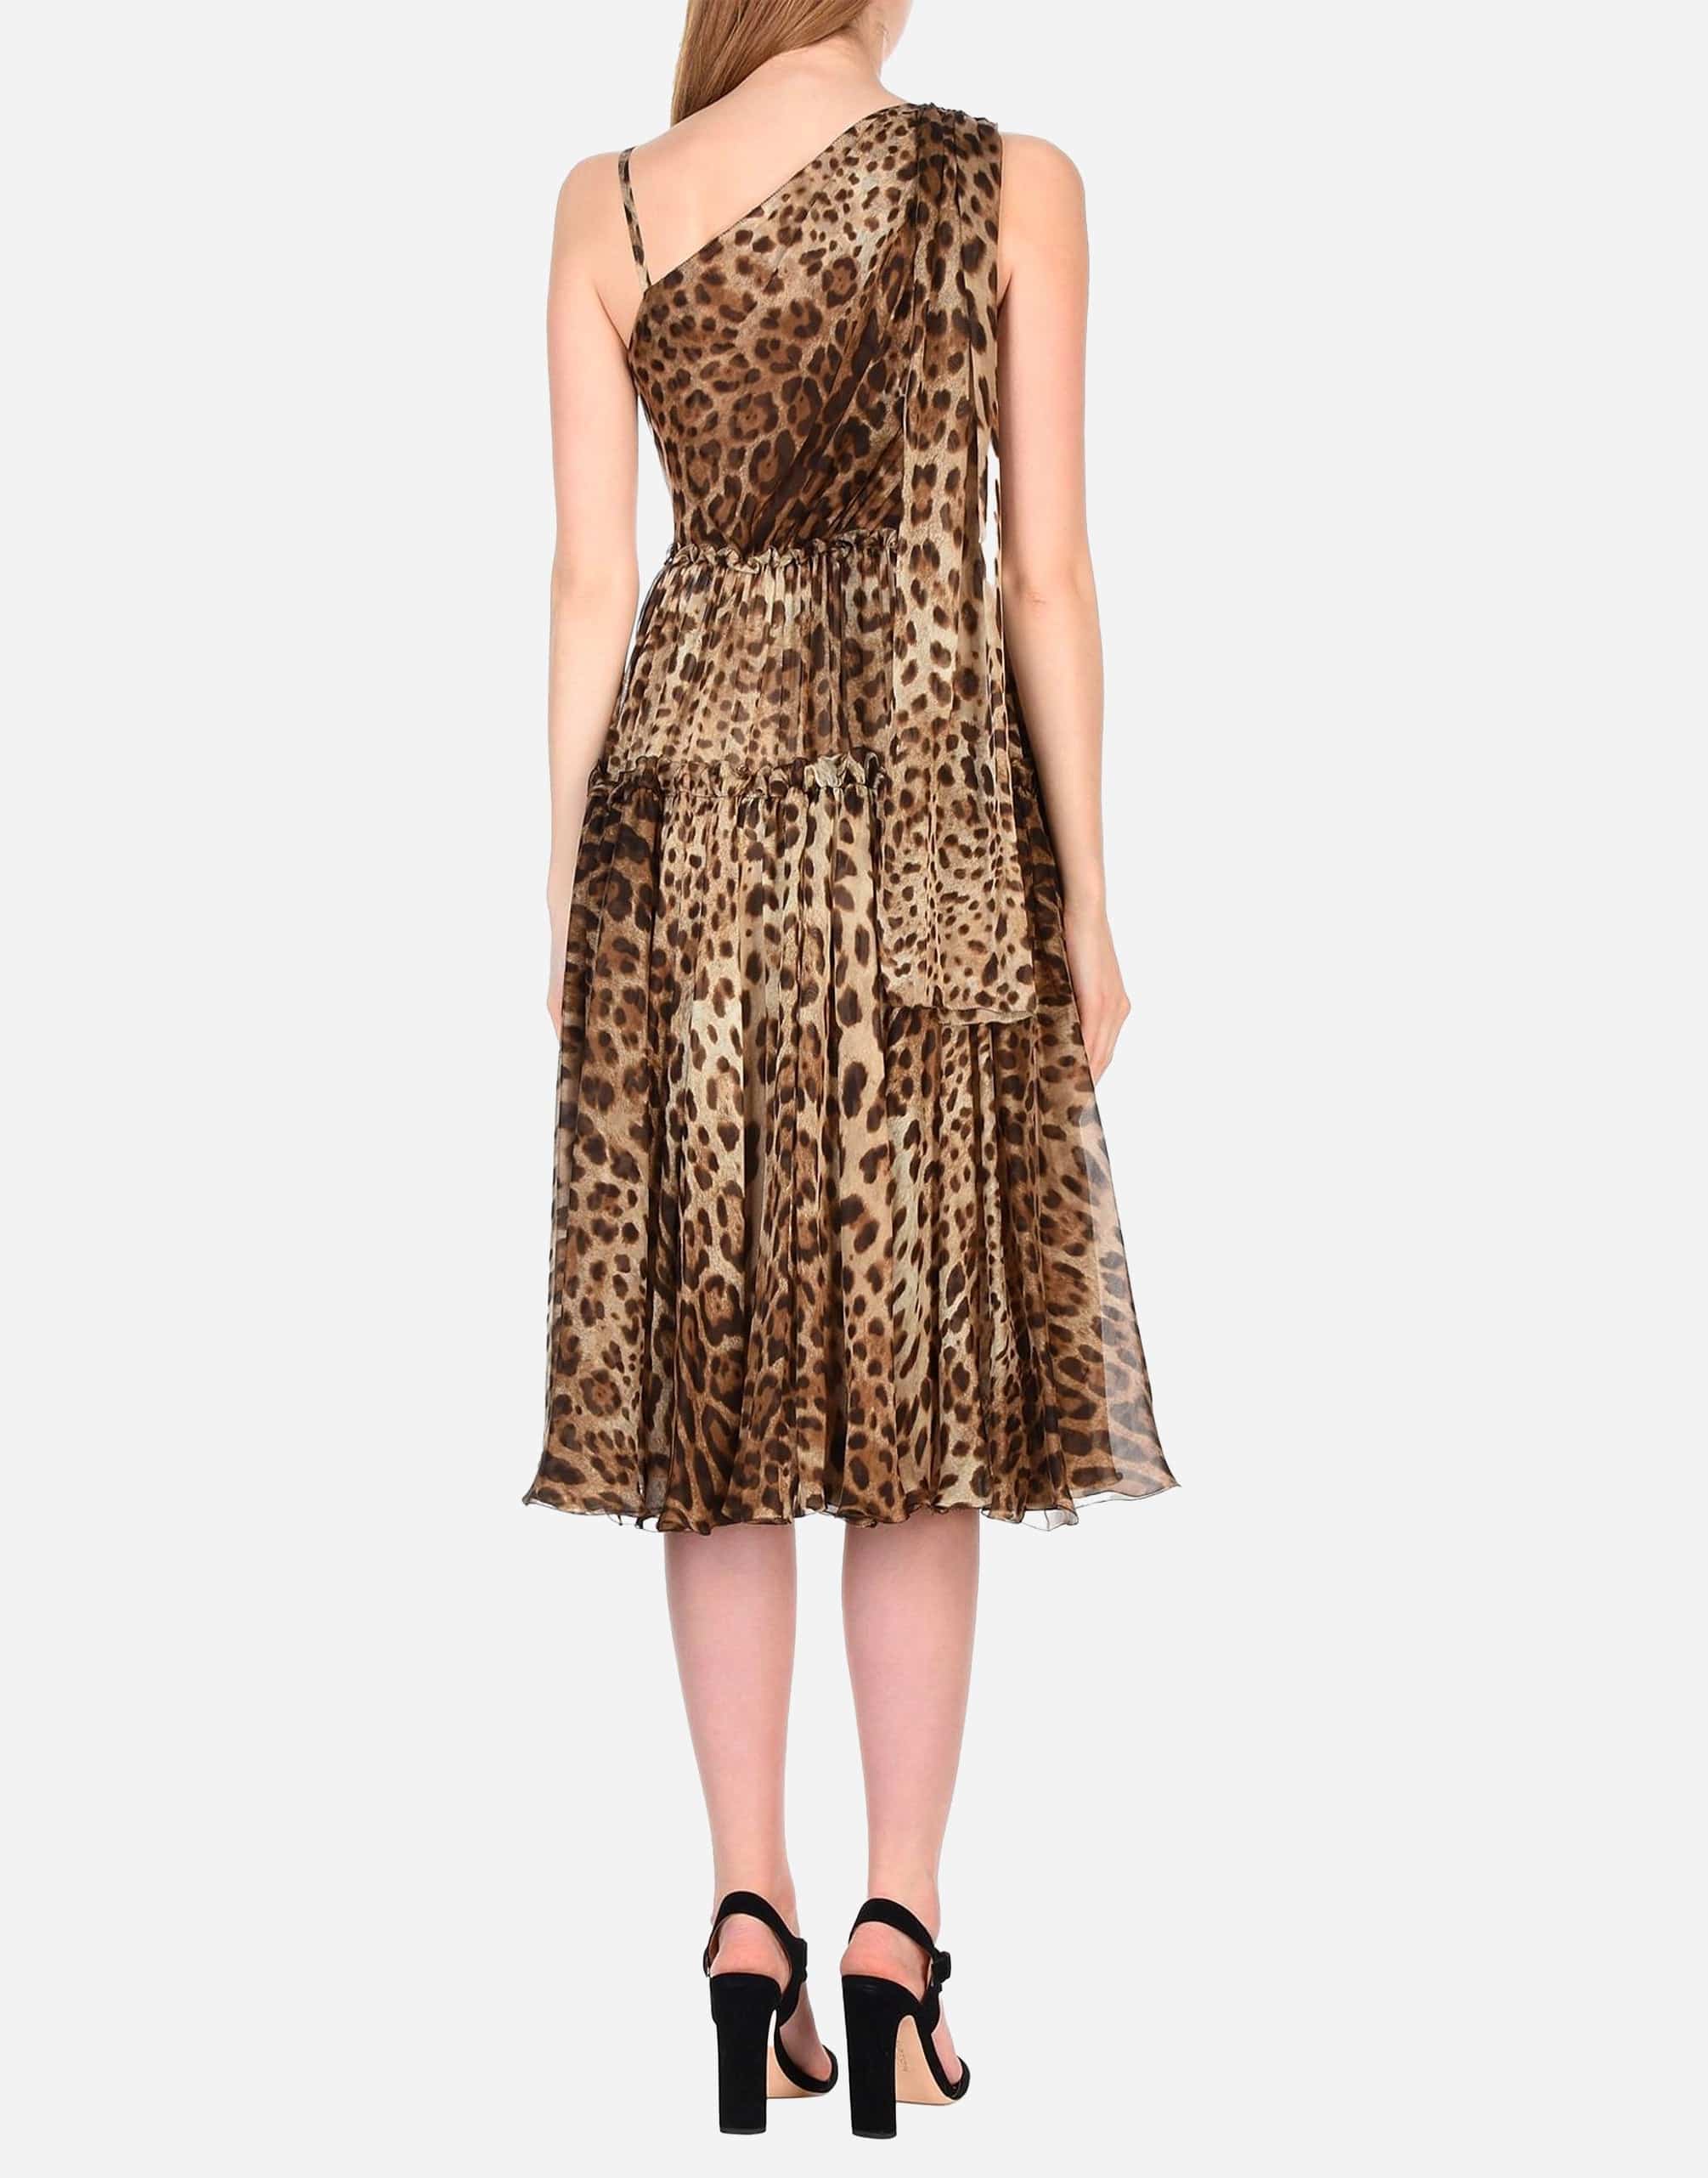 Dolce & Gabbana Leopard Printed Silk Chiffon Dress